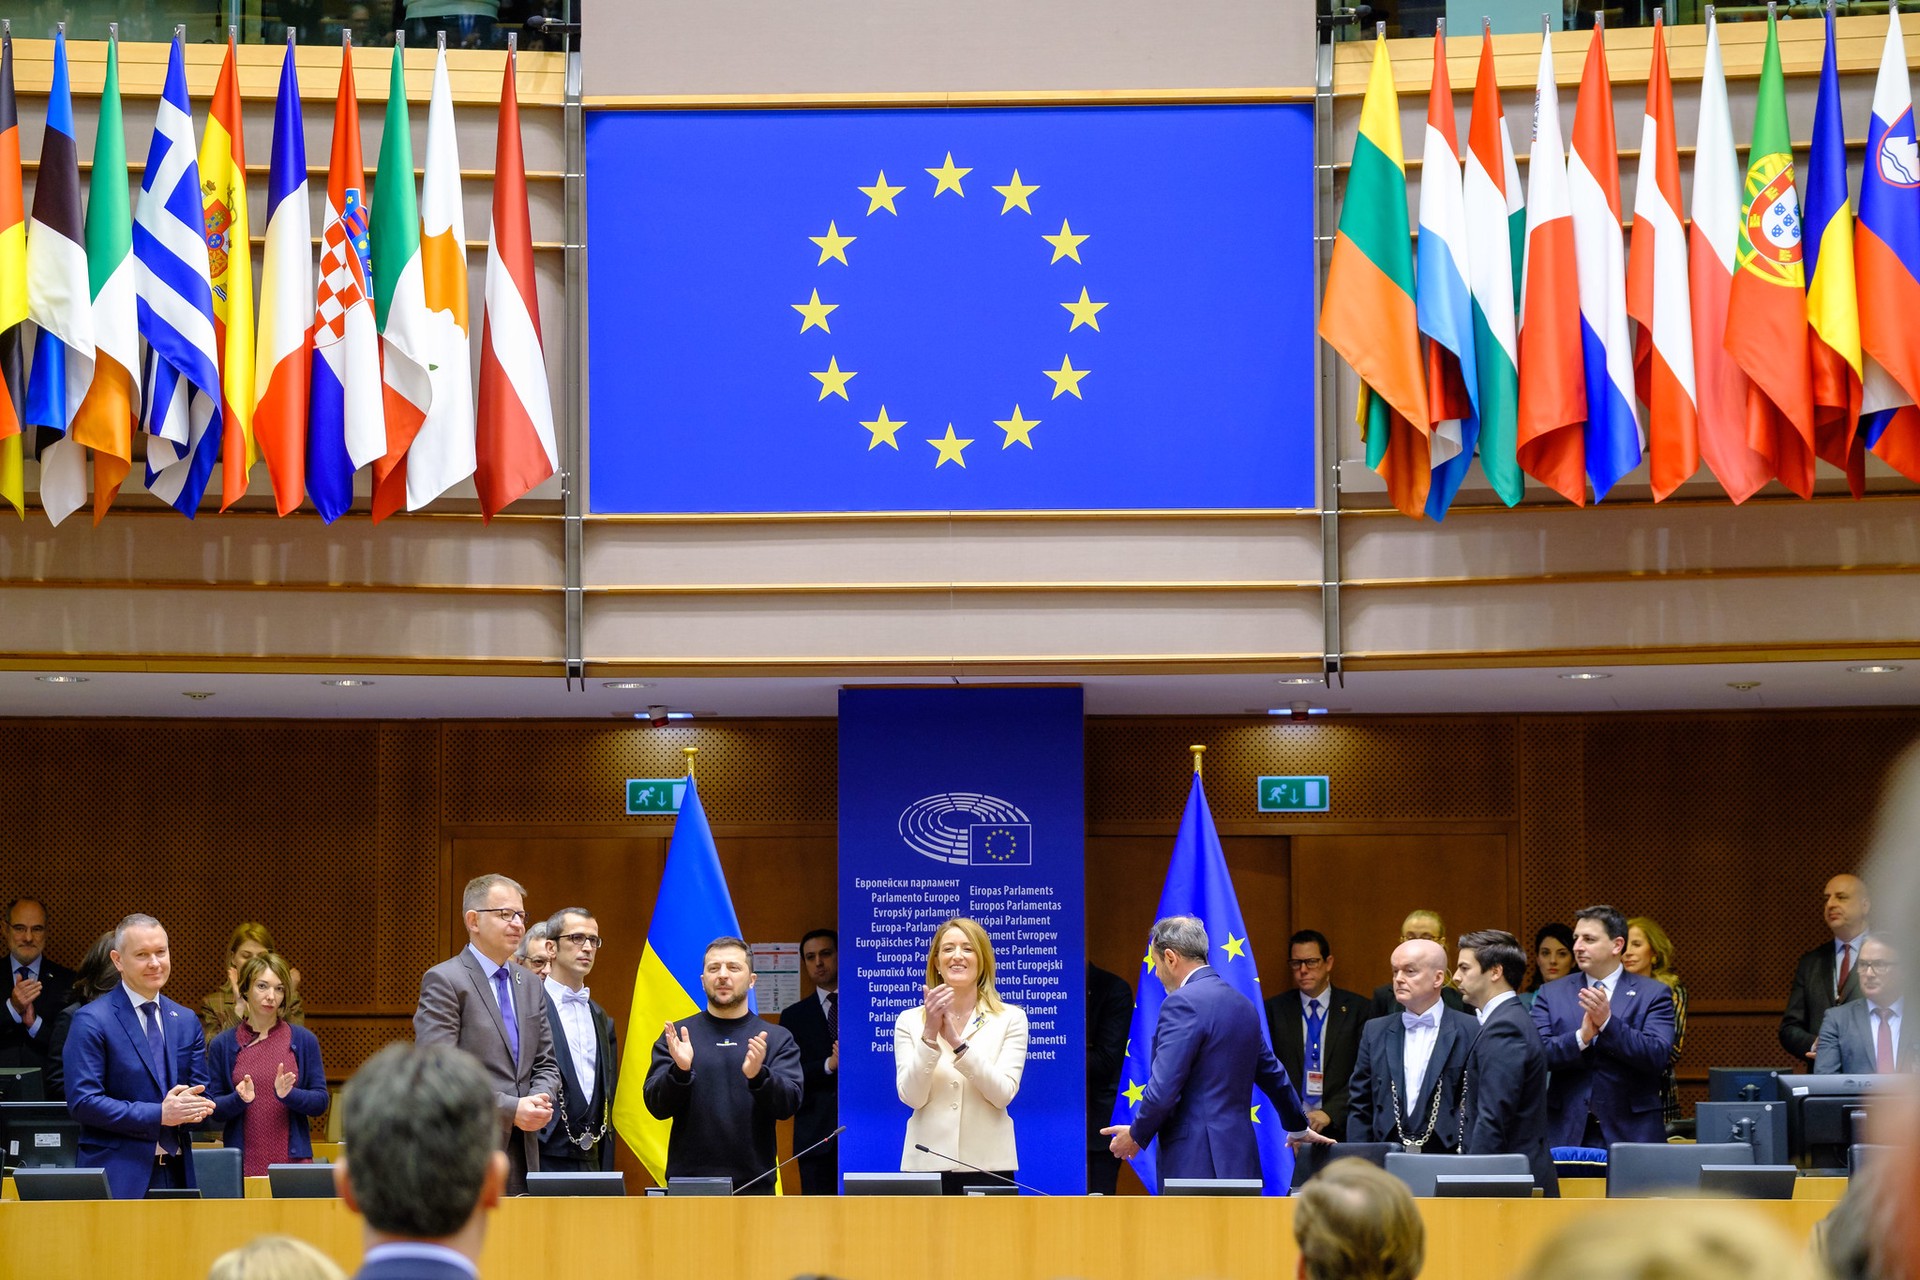 Pais: лидеры стран Евросоюза, выслушав Зеленского, не приняли новых решений по Украине